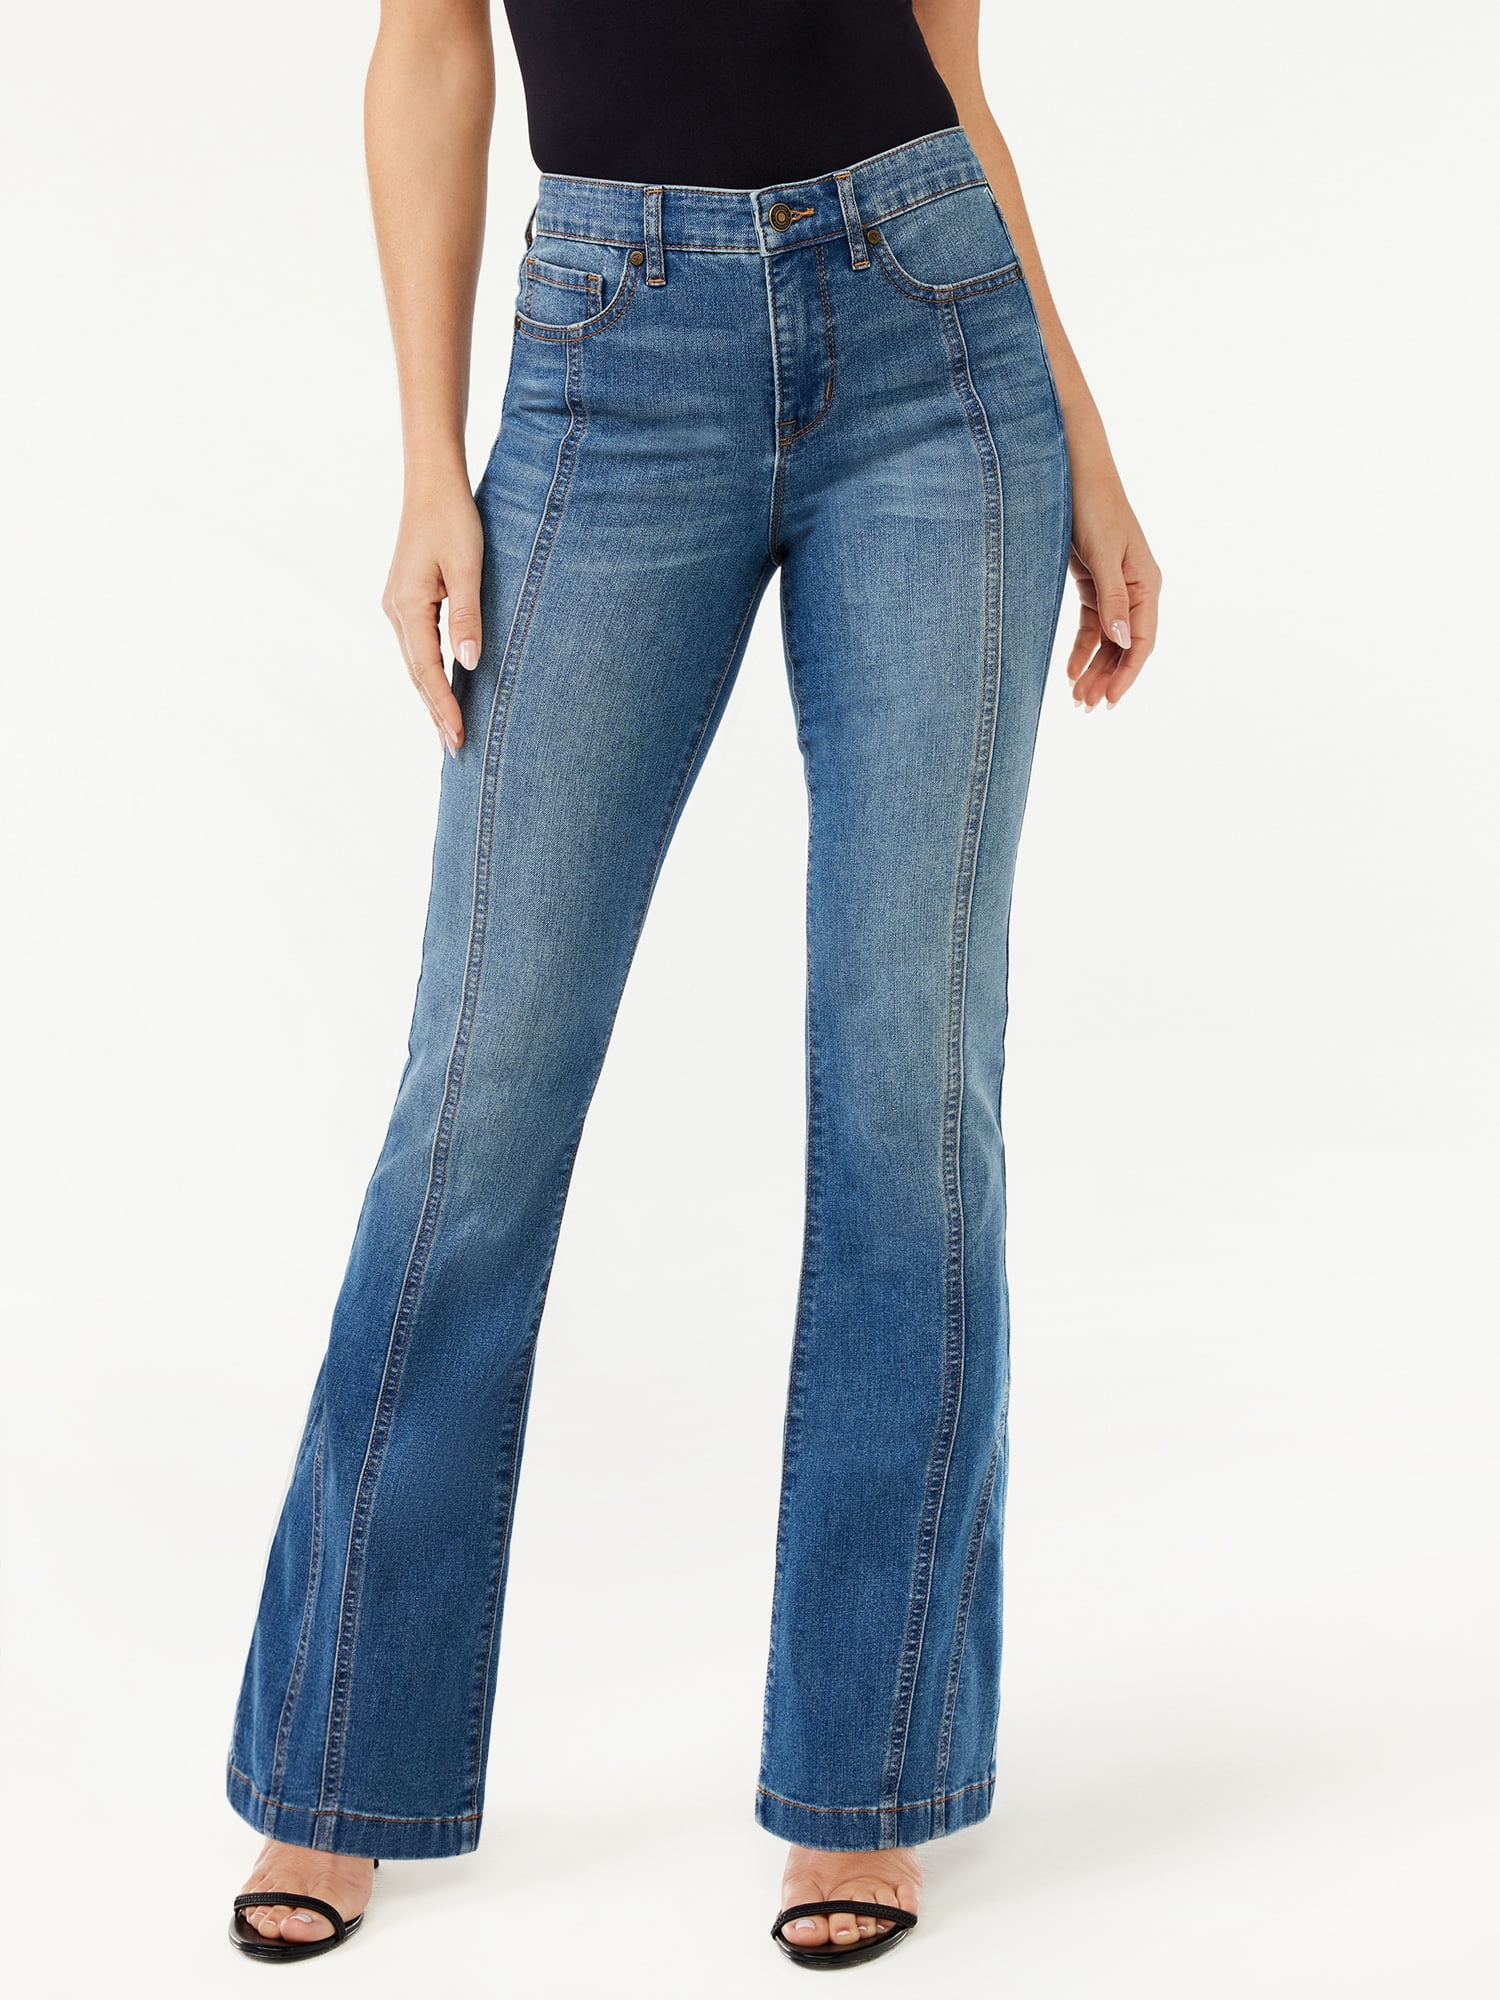 Sofia Jeans Women's Melisa High Rise Seamed Flare Jeans - Walmart.com